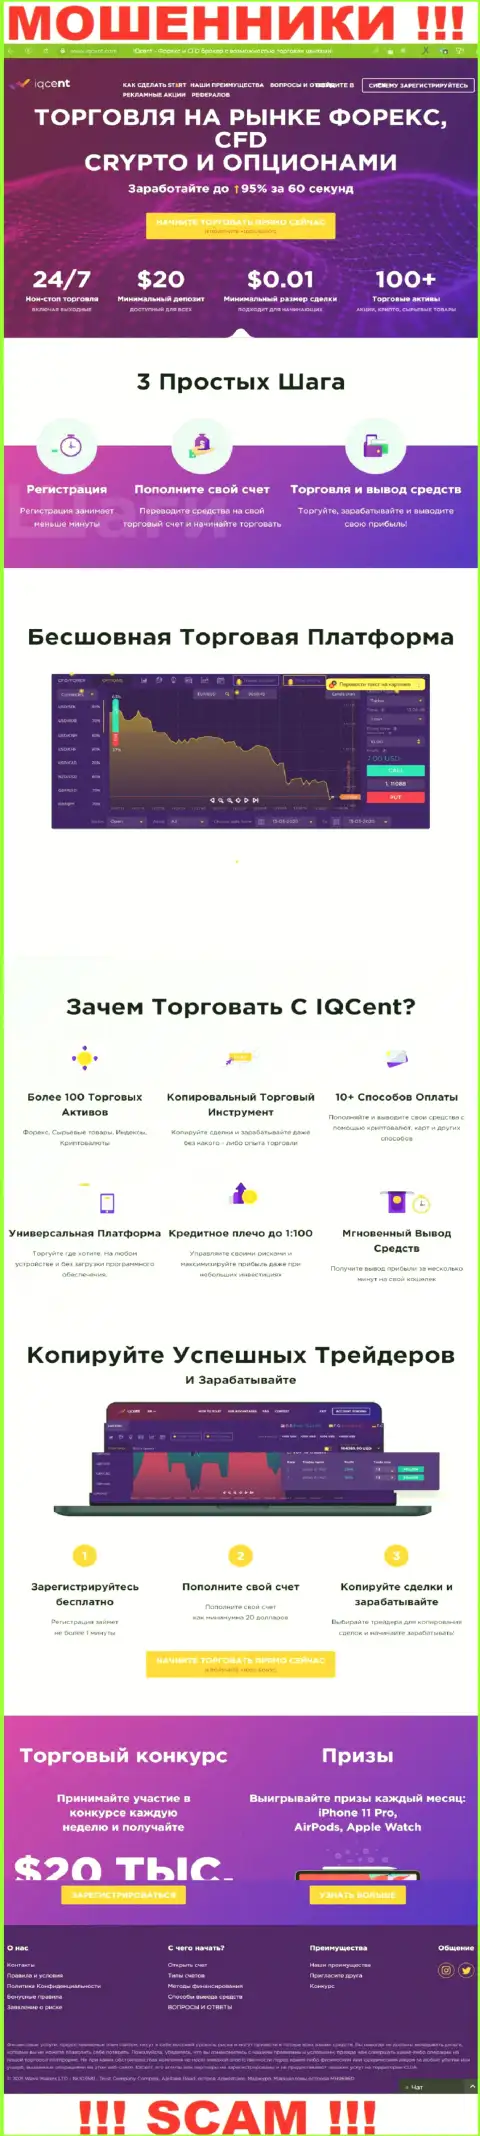 Официальный интернет-сервис мошенников АйКьюЦент Ком, забитый инфой для лохов